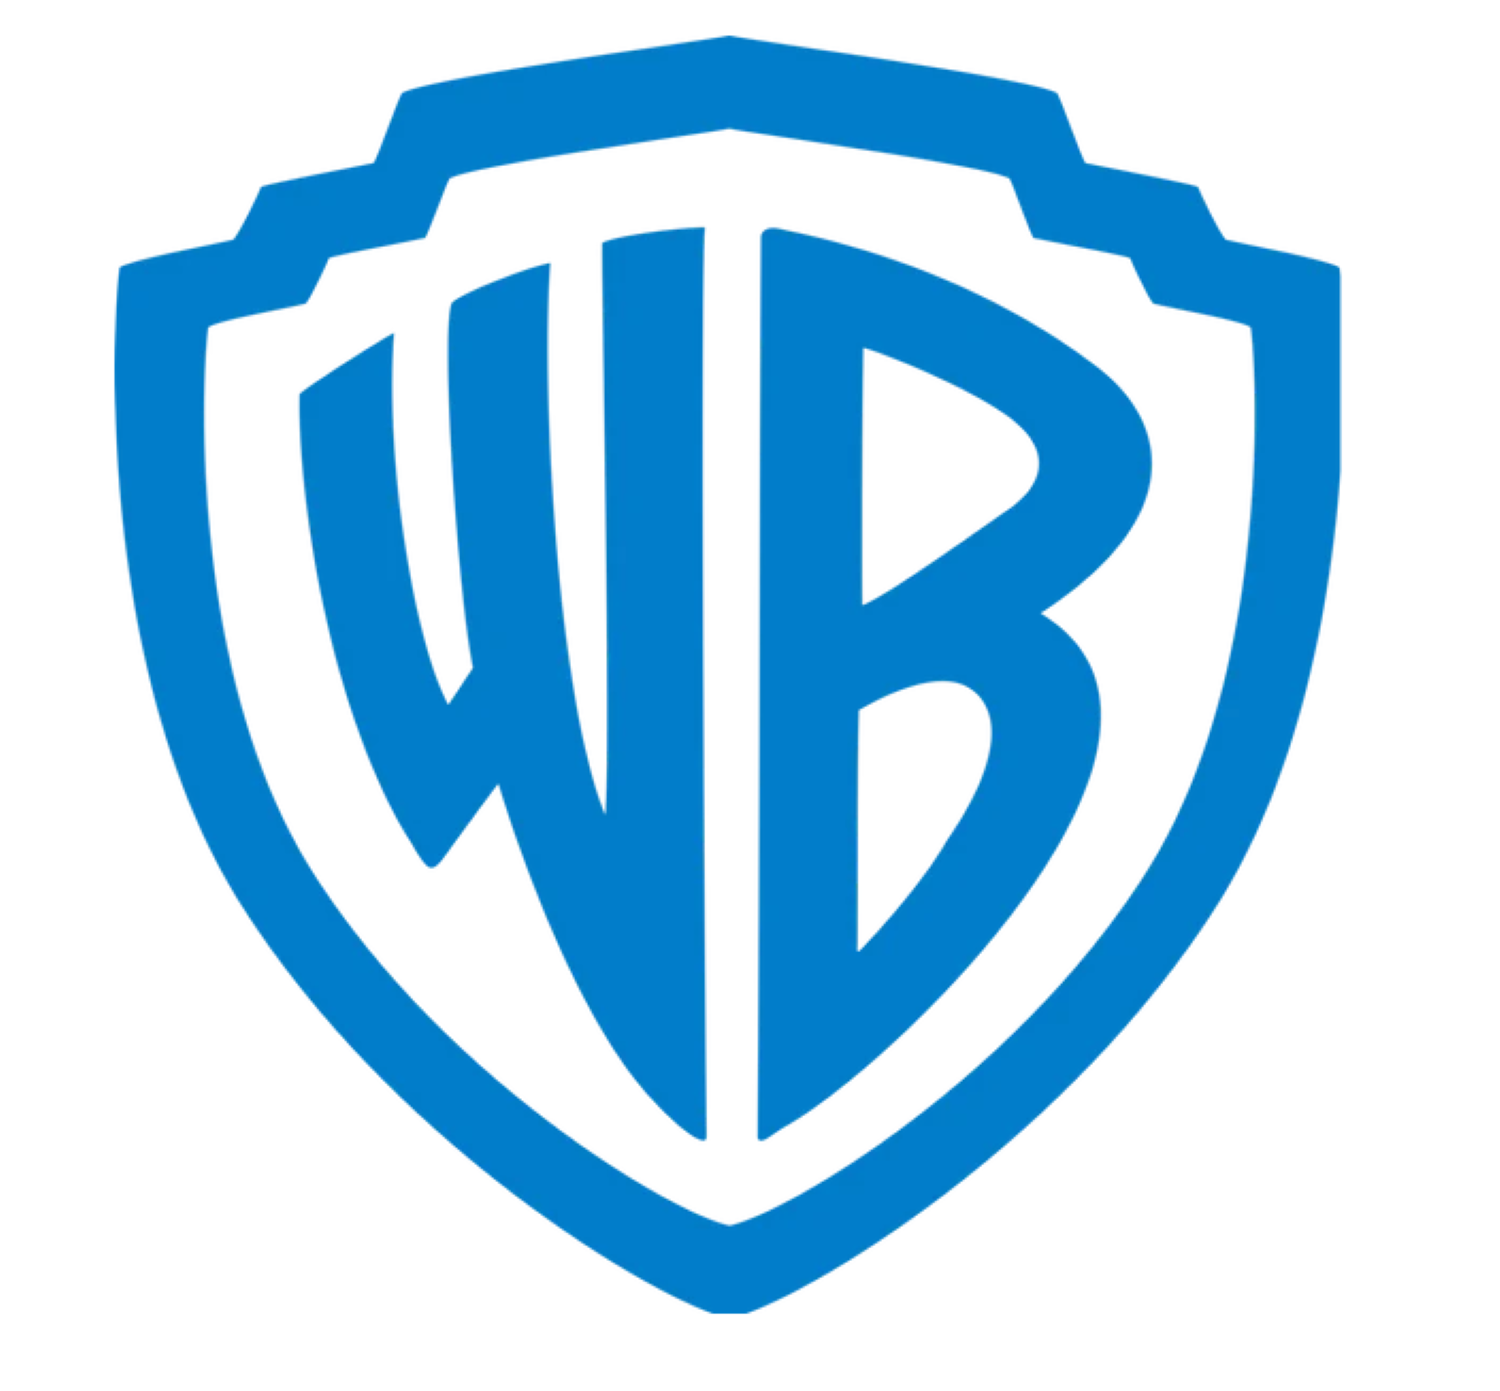 Zu sehen ist das Logo von Warner Brothers.